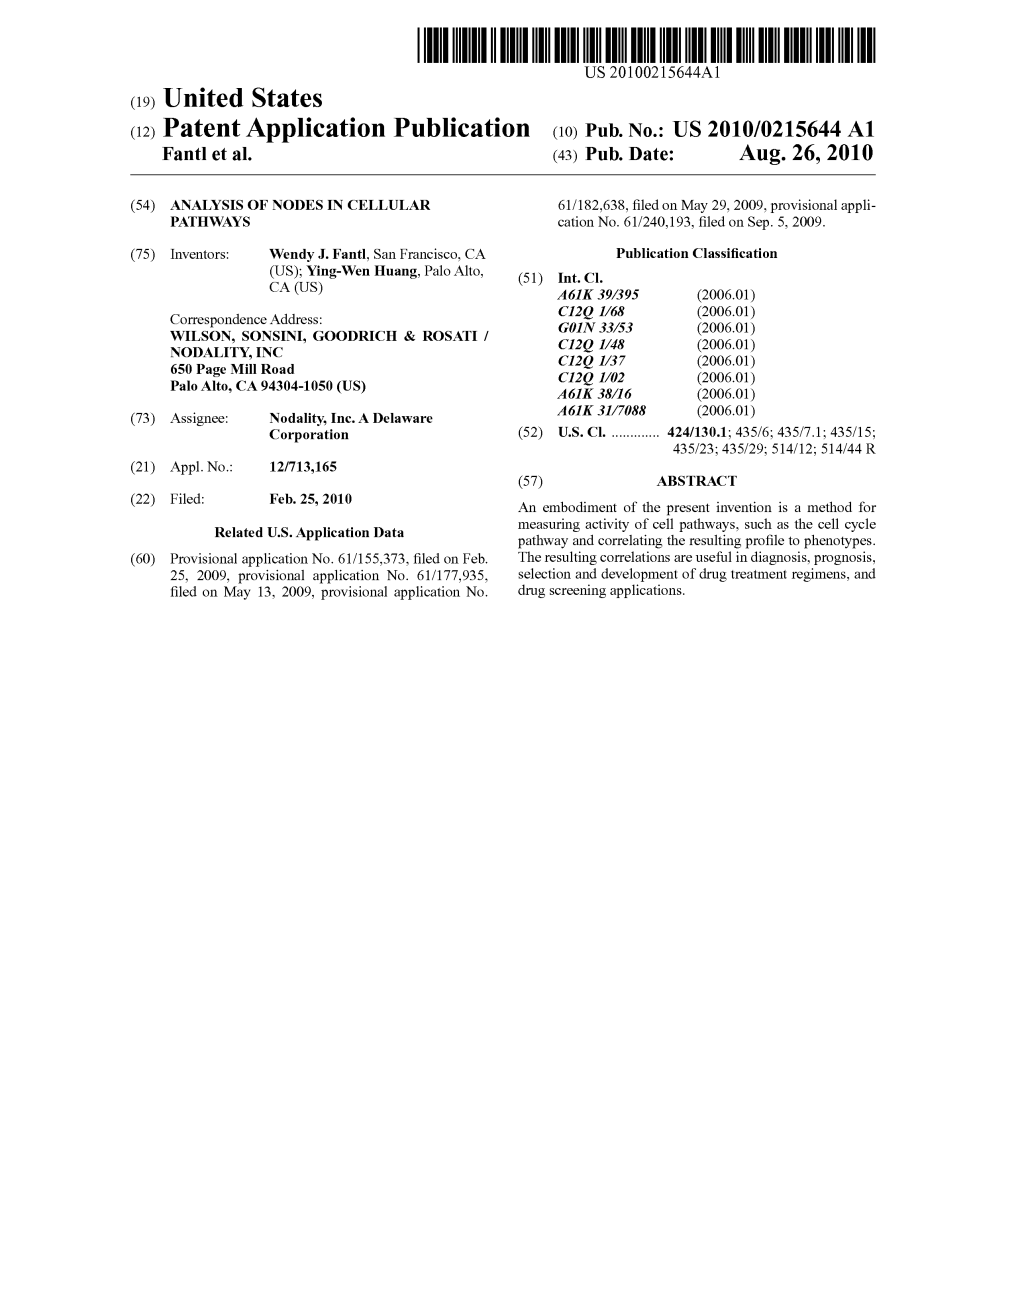 (12) Patent Application Publication (10) Pub. No.: US 2010/0215644 A1 Fant Et Al